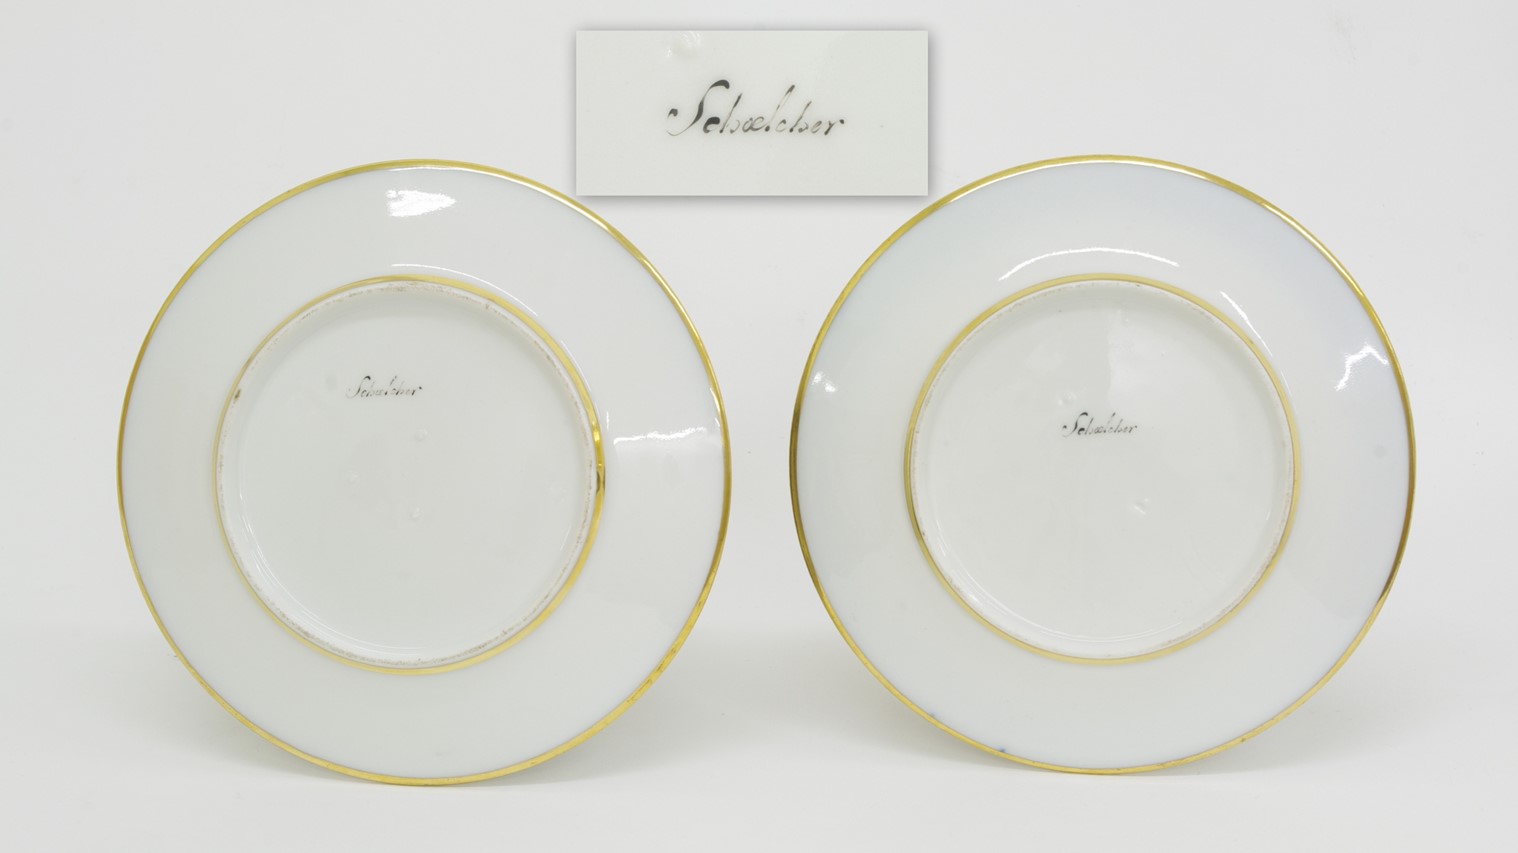 Pair of Old Paris Cabinet Plates, c. 1820